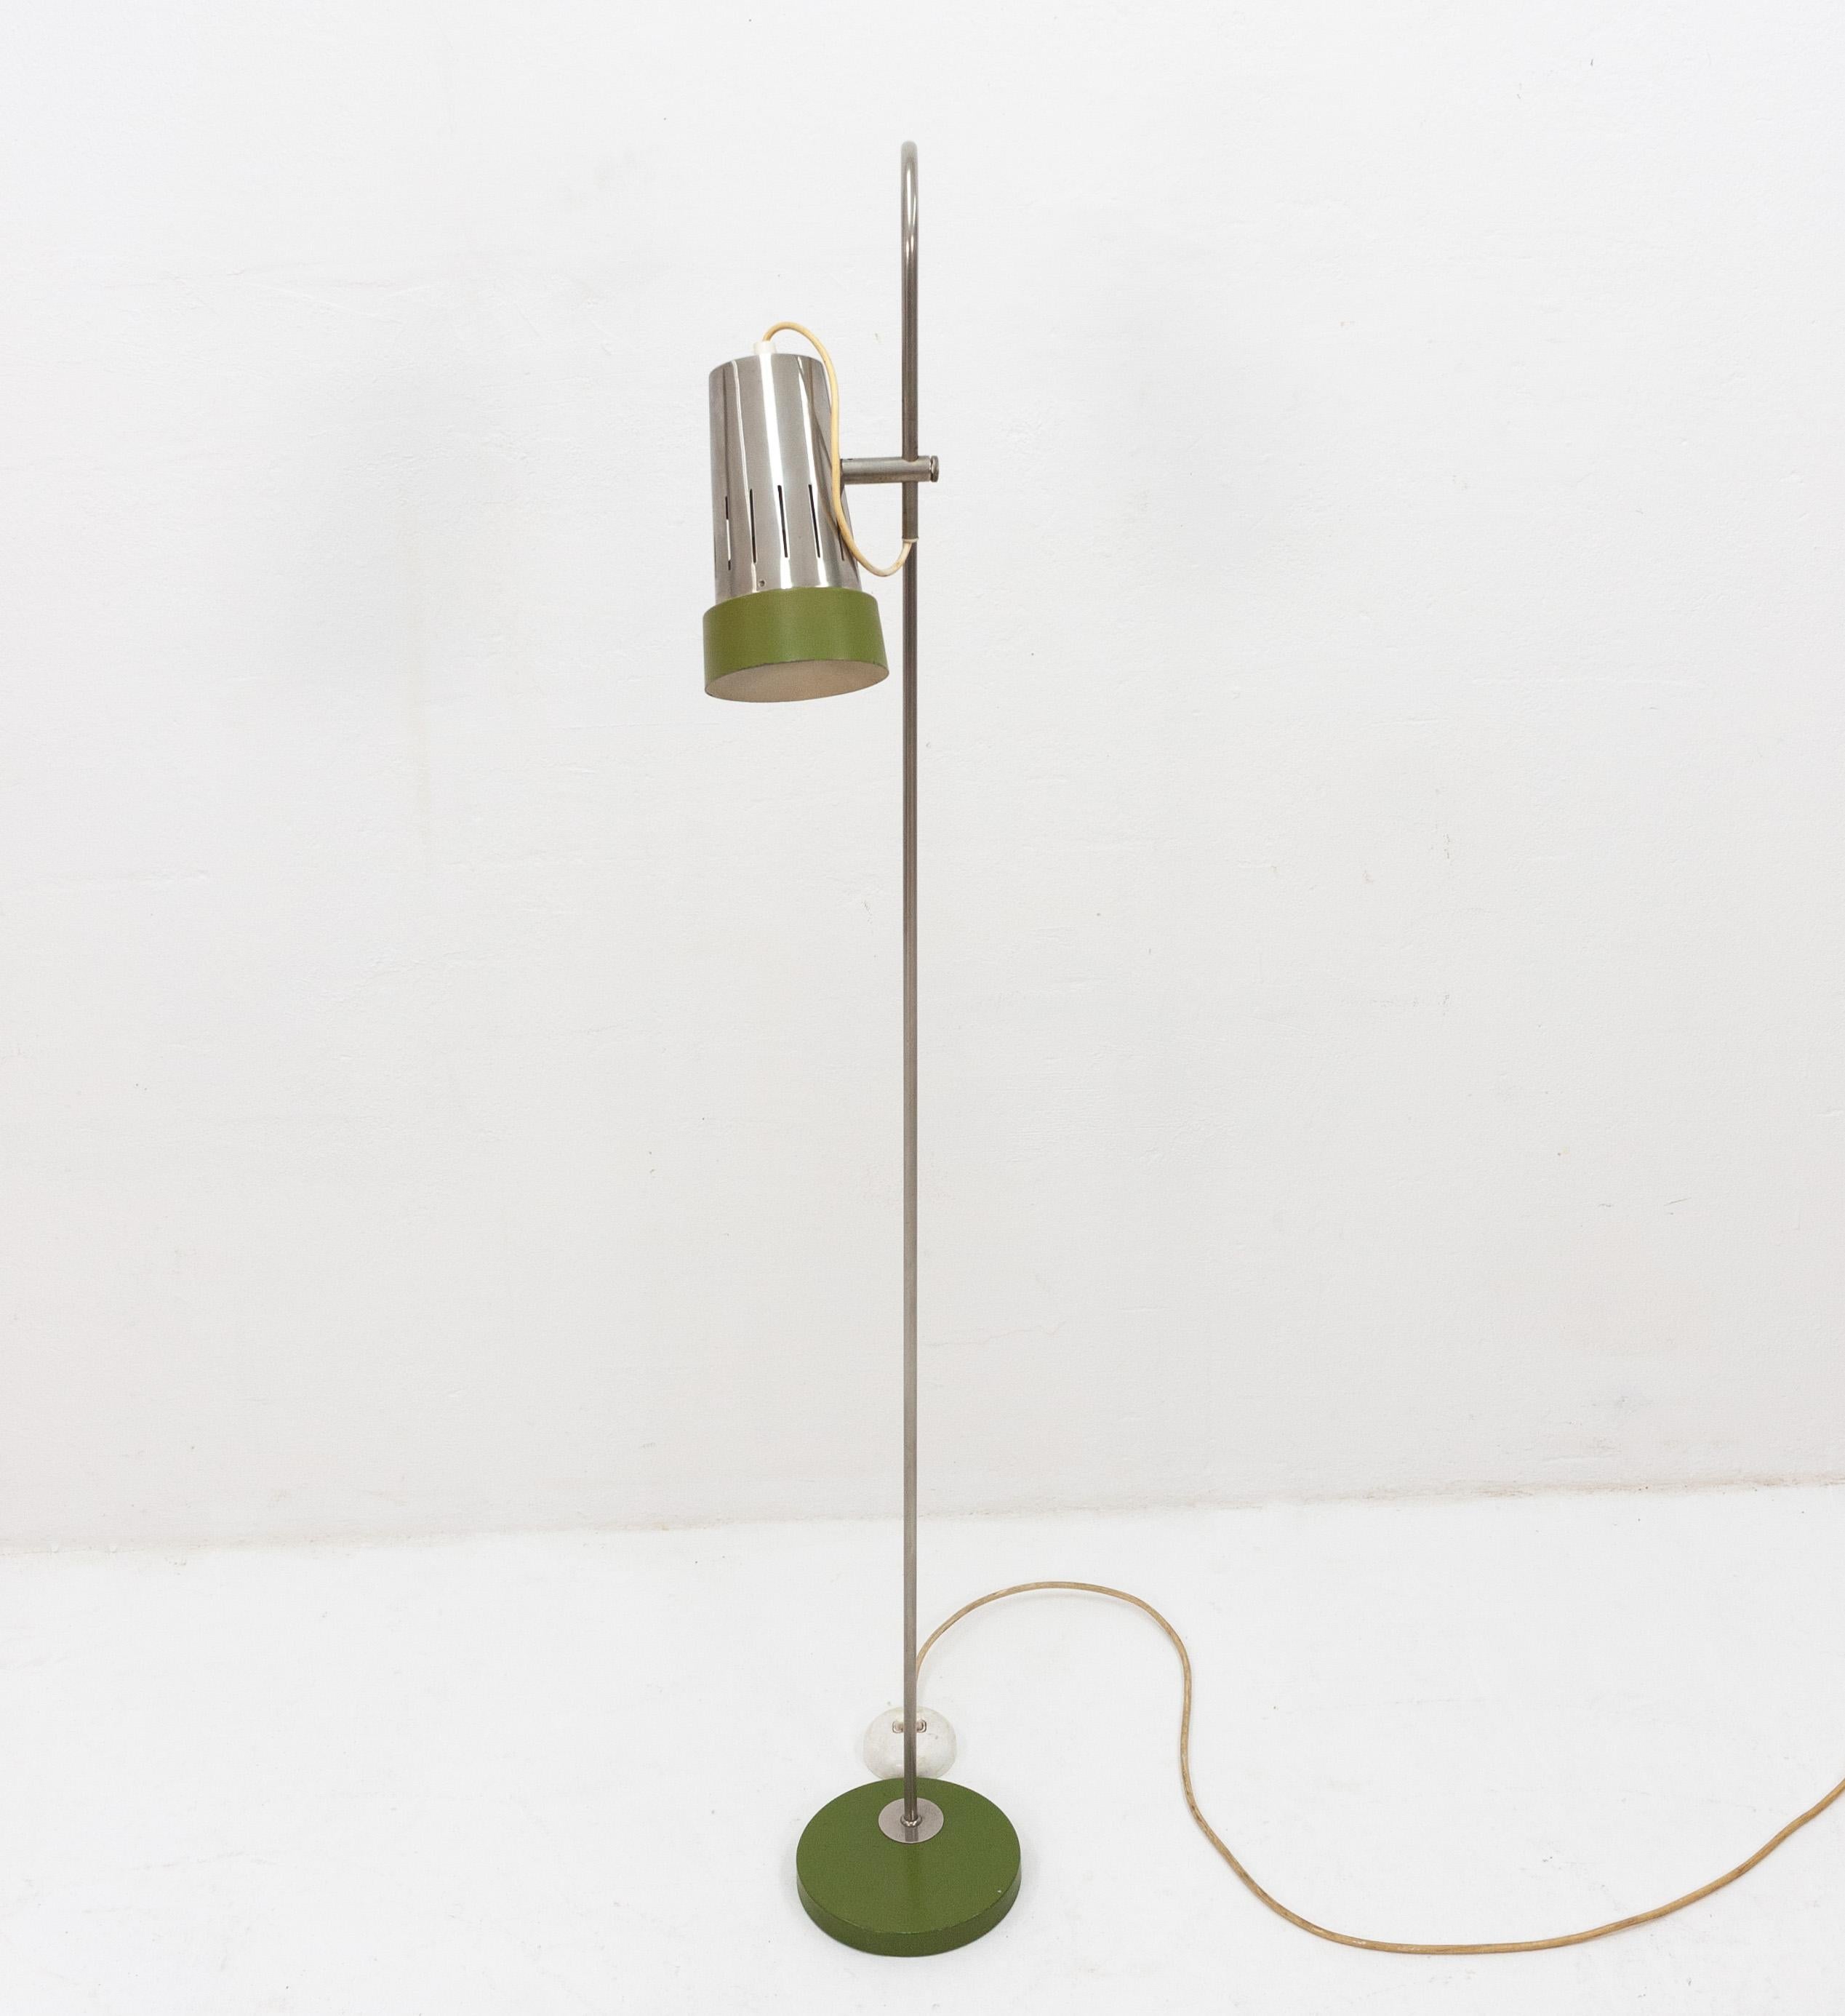 Magnifique lampadaire vintage très probablement fabriqué par la société néerlandaise Artiforte dans les années 1960 et présentant une élégante couleur vert avocat. La capuche est entièrement réglable et peut pivoter. Par conséquent, ce lampadaire